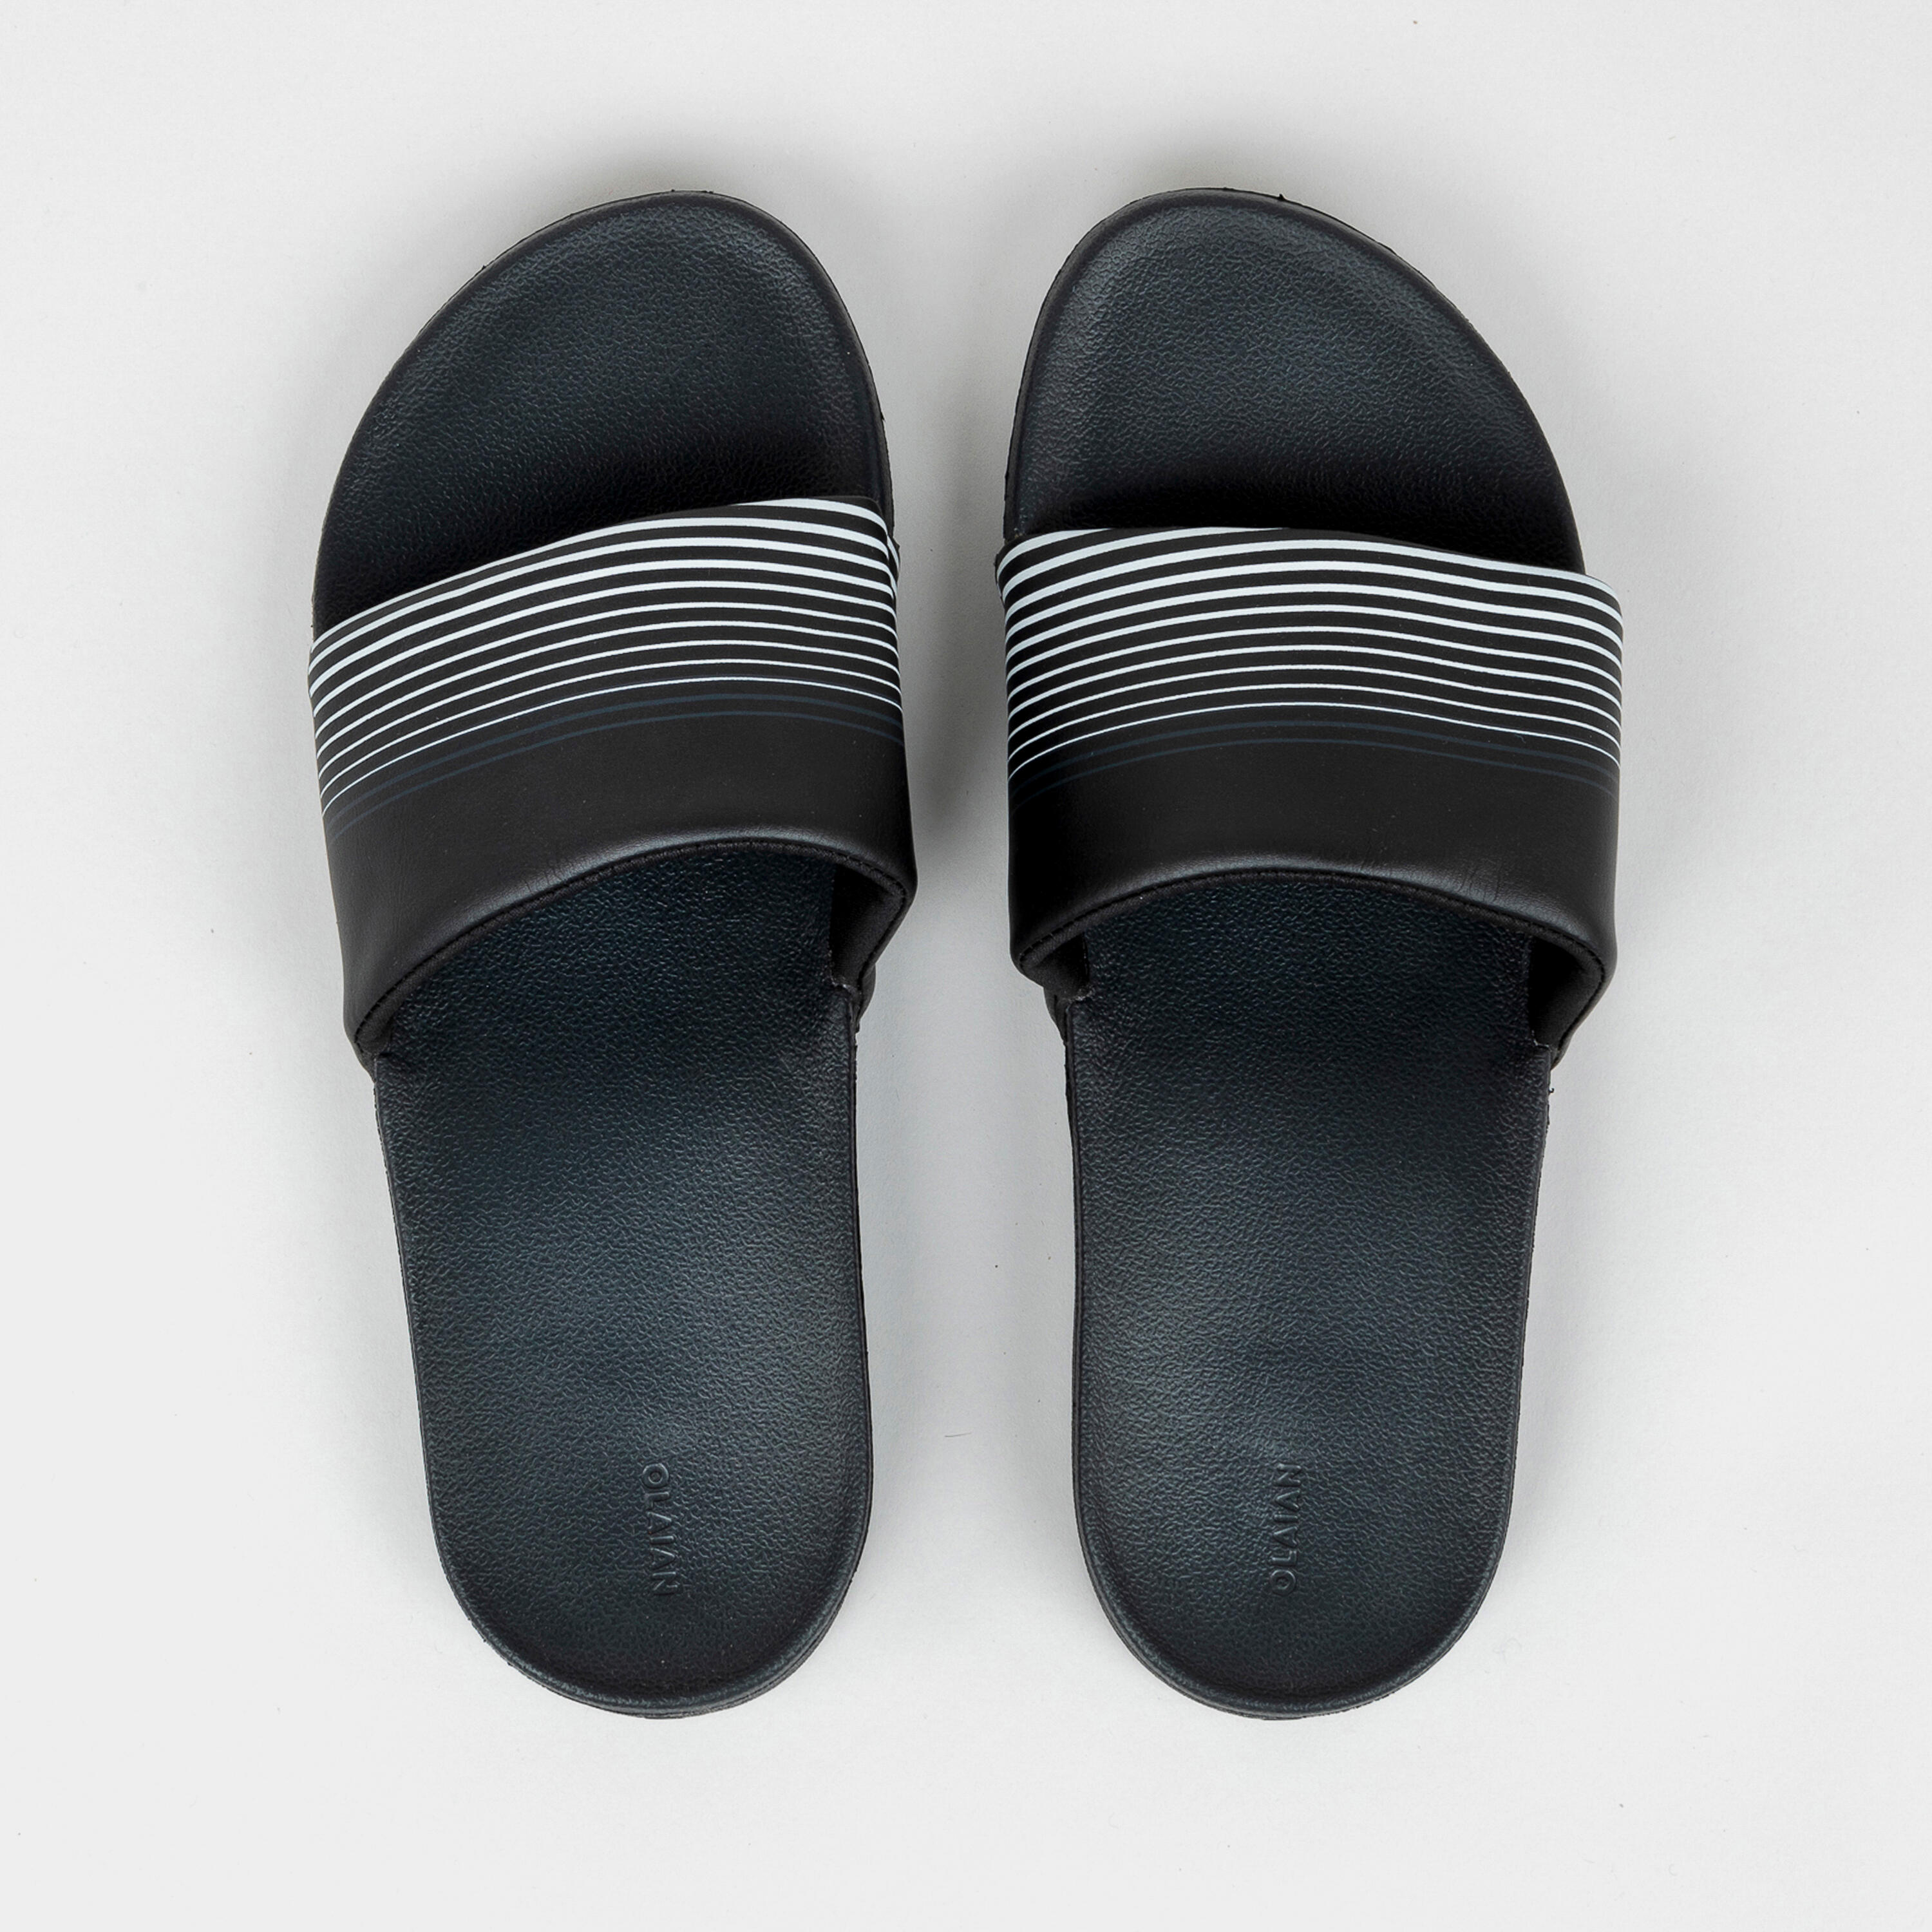 Men's Slide Sandals - 550 - black, Carbon grey - Olaian - Decathlon